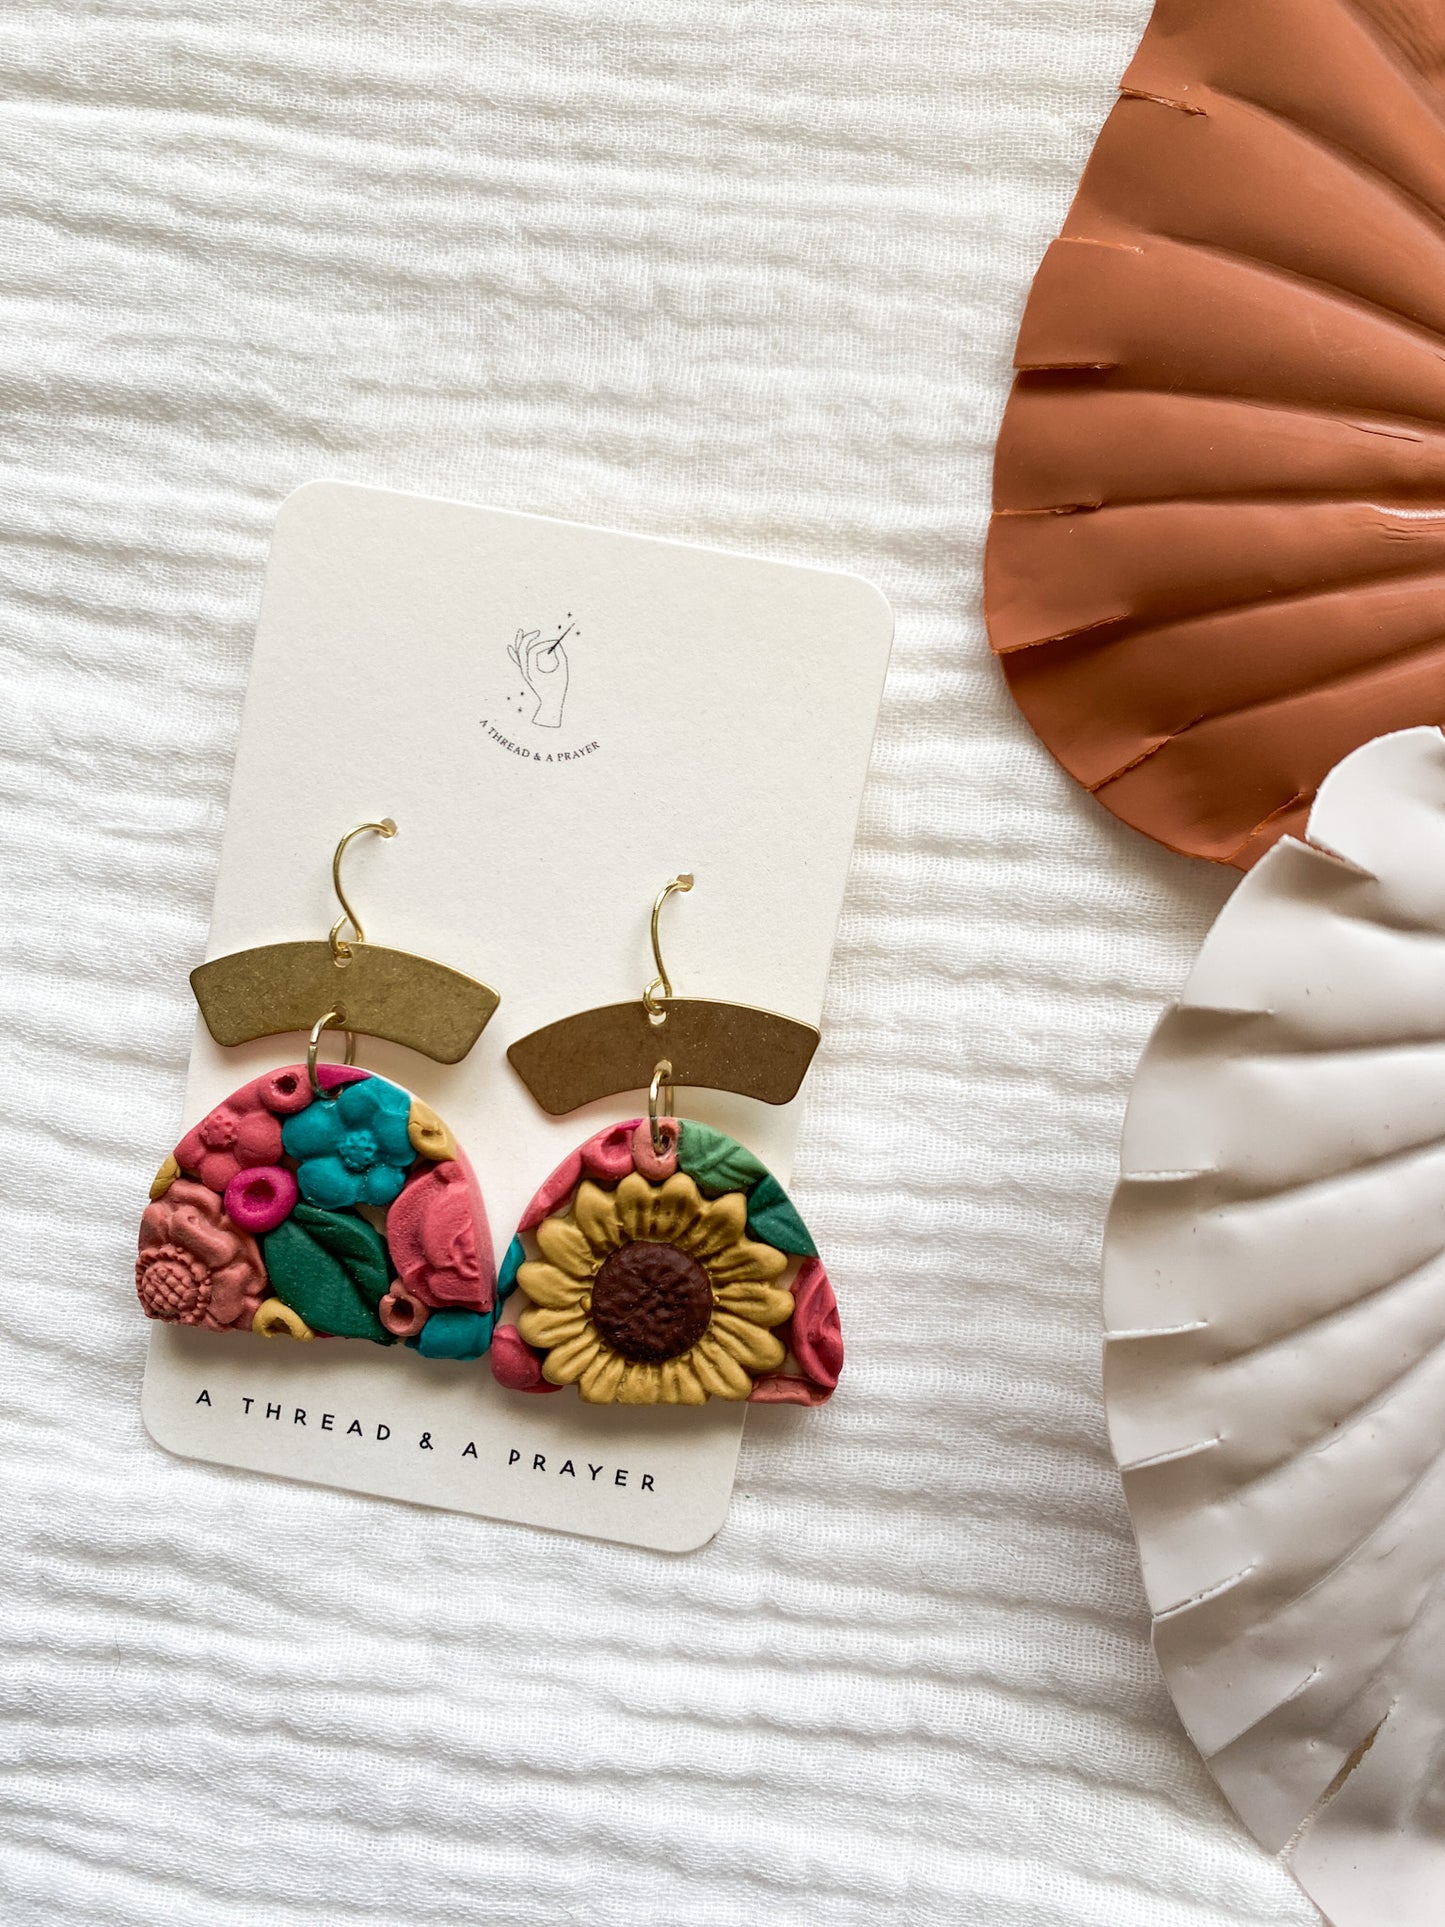 Set 1 | Flower Garden Earrings | Dangle Clay Earrings